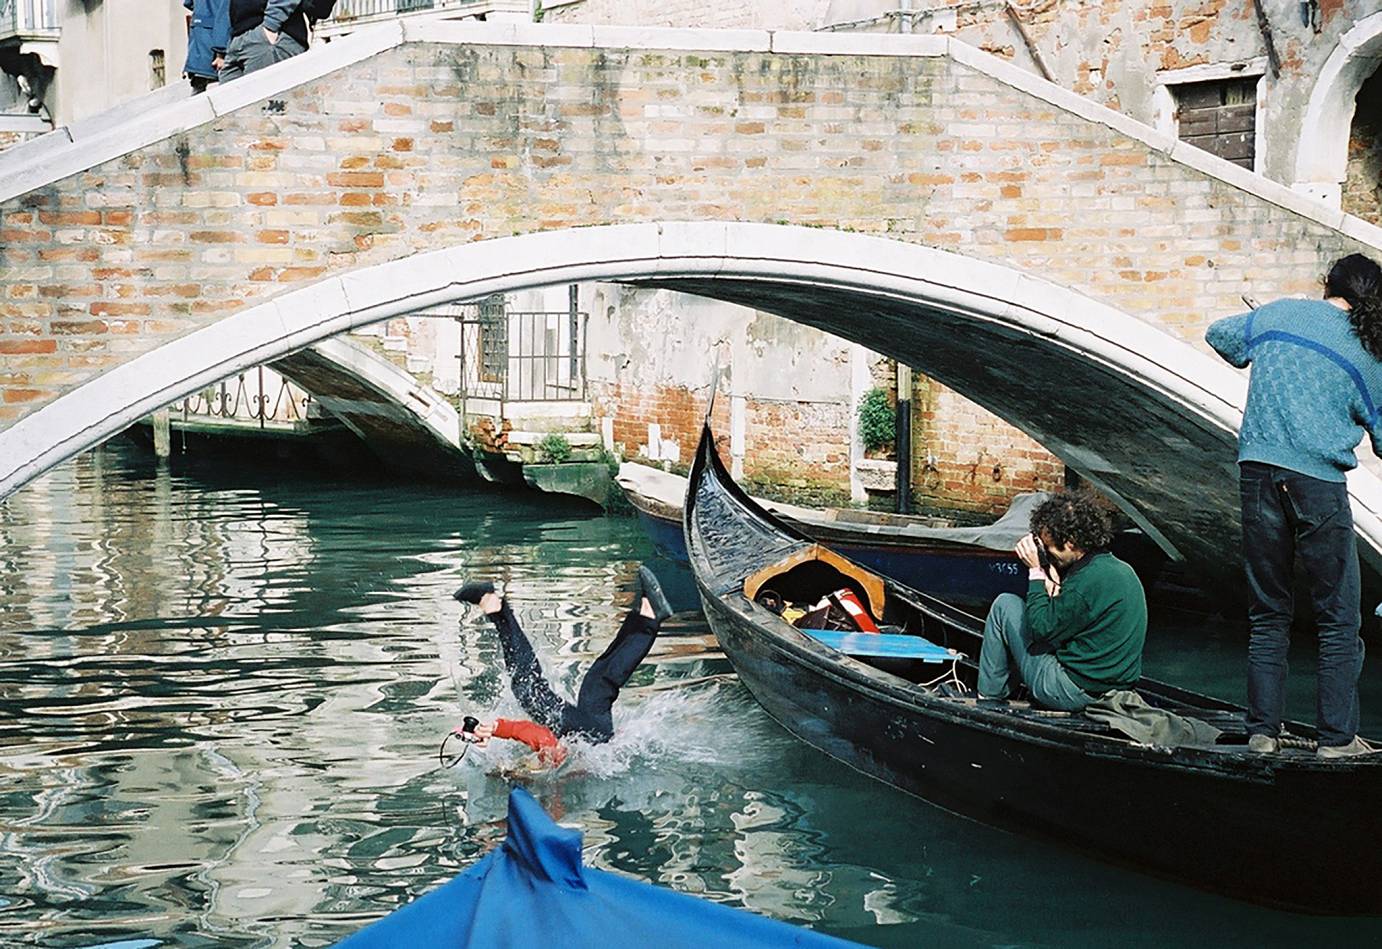 Gelatin: Performance - Nellanutella, 2001, Gelatin schwimmen im Kanal von Venedig